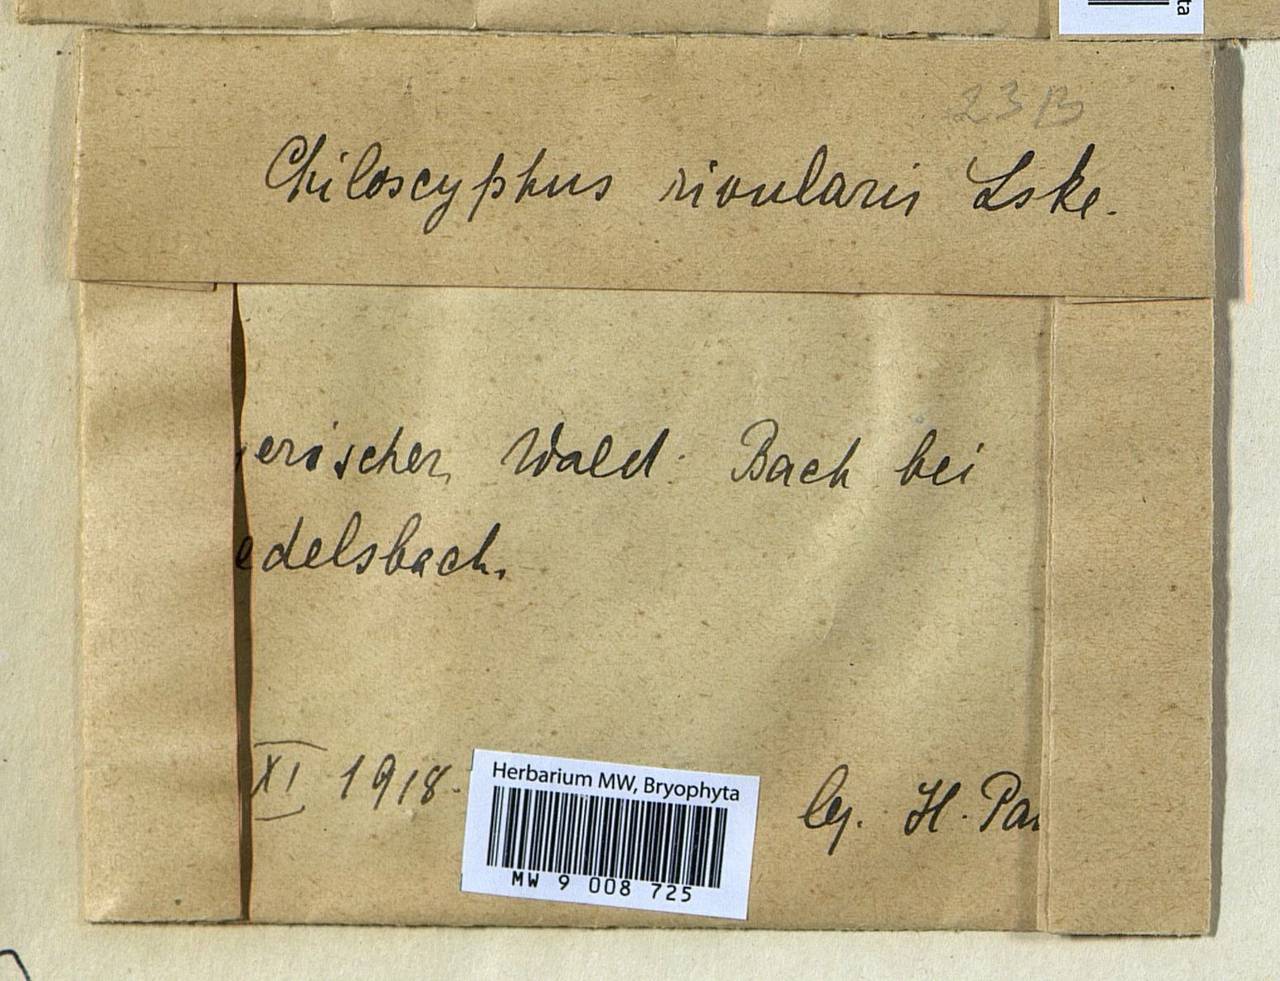 Chiloscyphus polyanthos var. rivularis (Schrad.) Lindb. & Arnell, Гербарий мохообразных, Мхи - Западная Европа (BEu) (Германия)